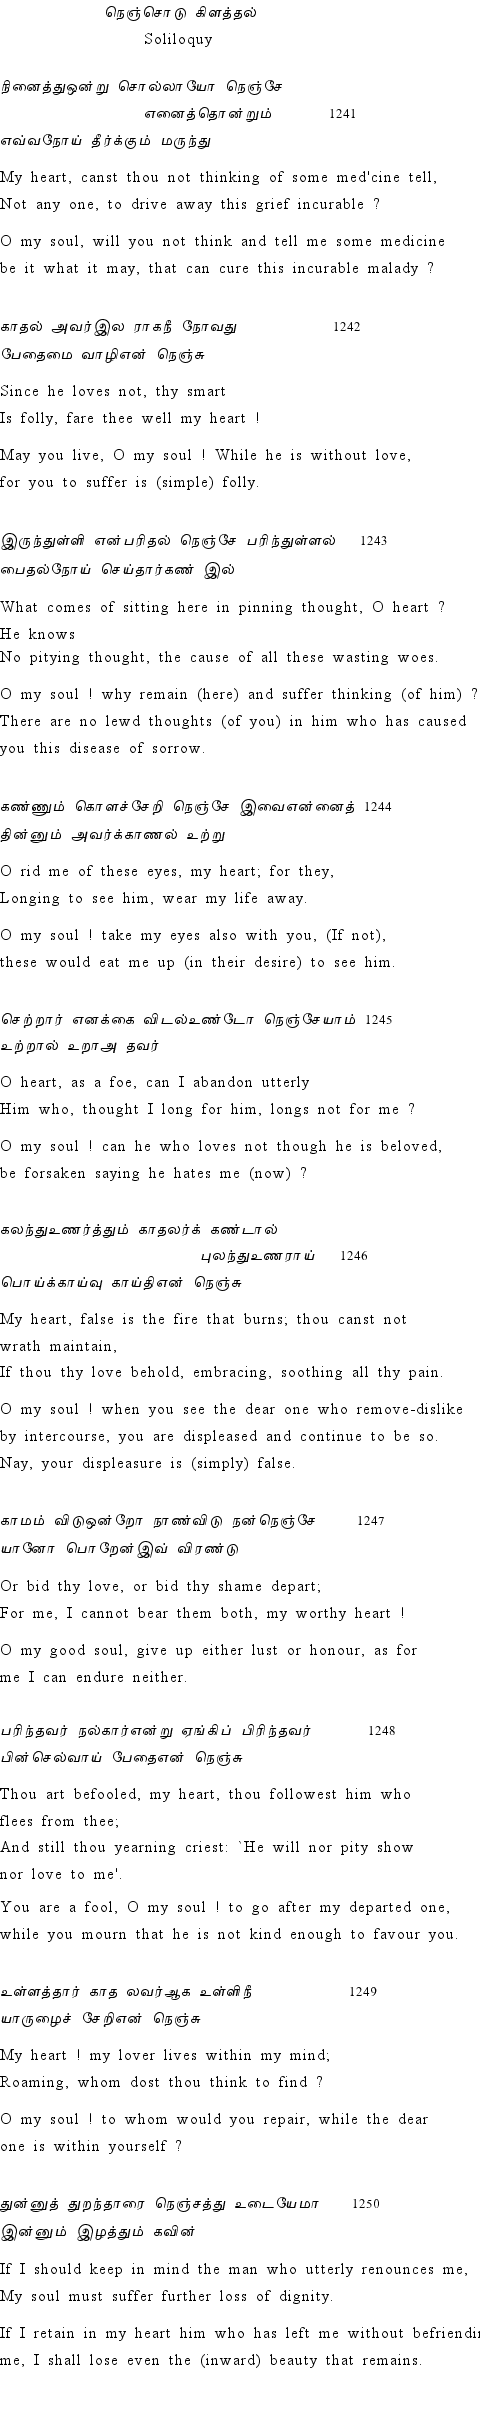 Text of Adhikaram 125